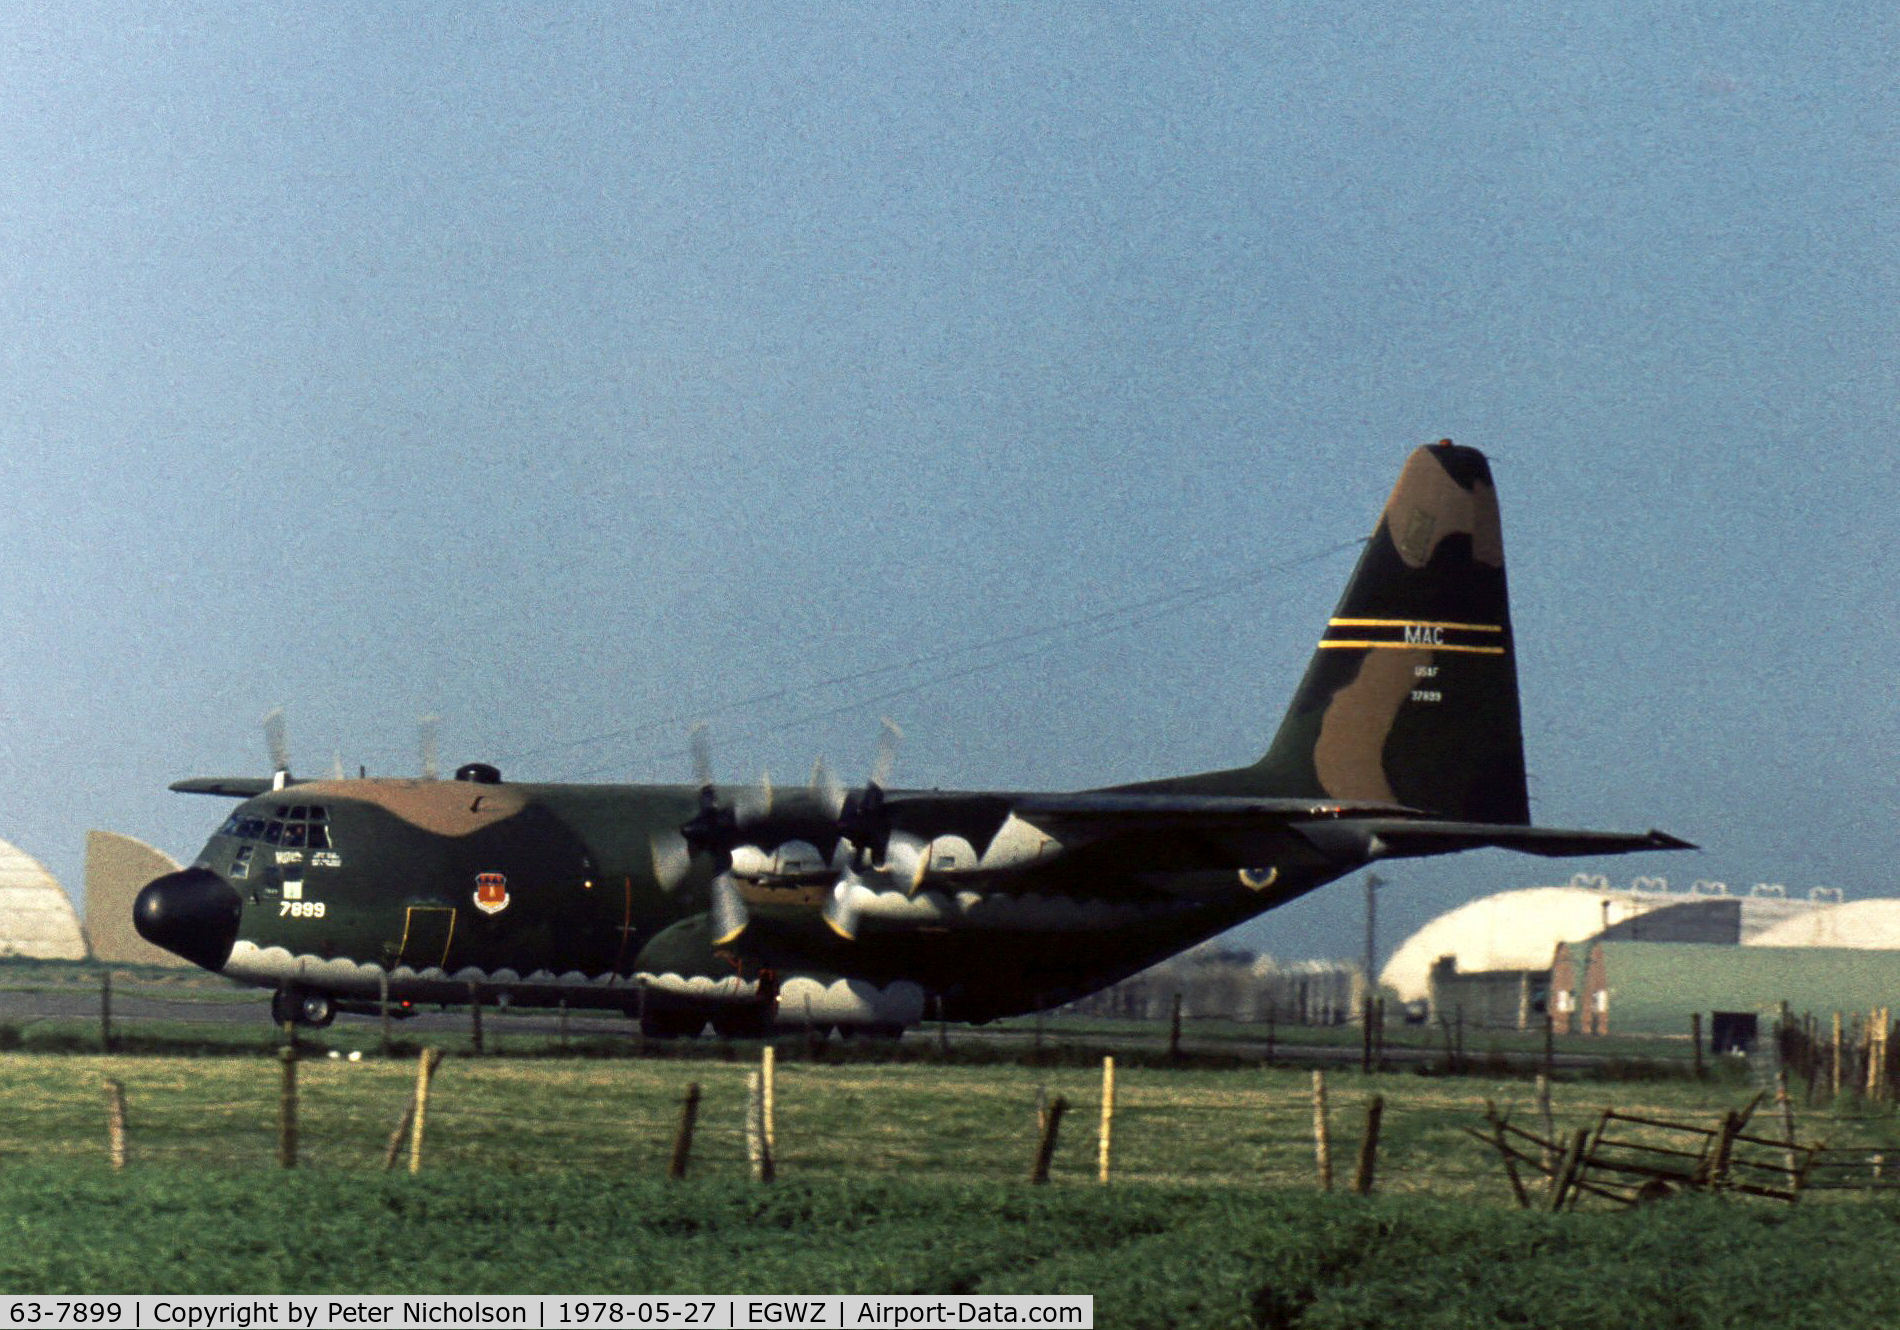 63-7899, 1963 Lockheed C-130E Hercules C/N 382-3970, C-130E Hercules of the 317th Tactical Air Wing seen at RAF Alconbury in May 1978.